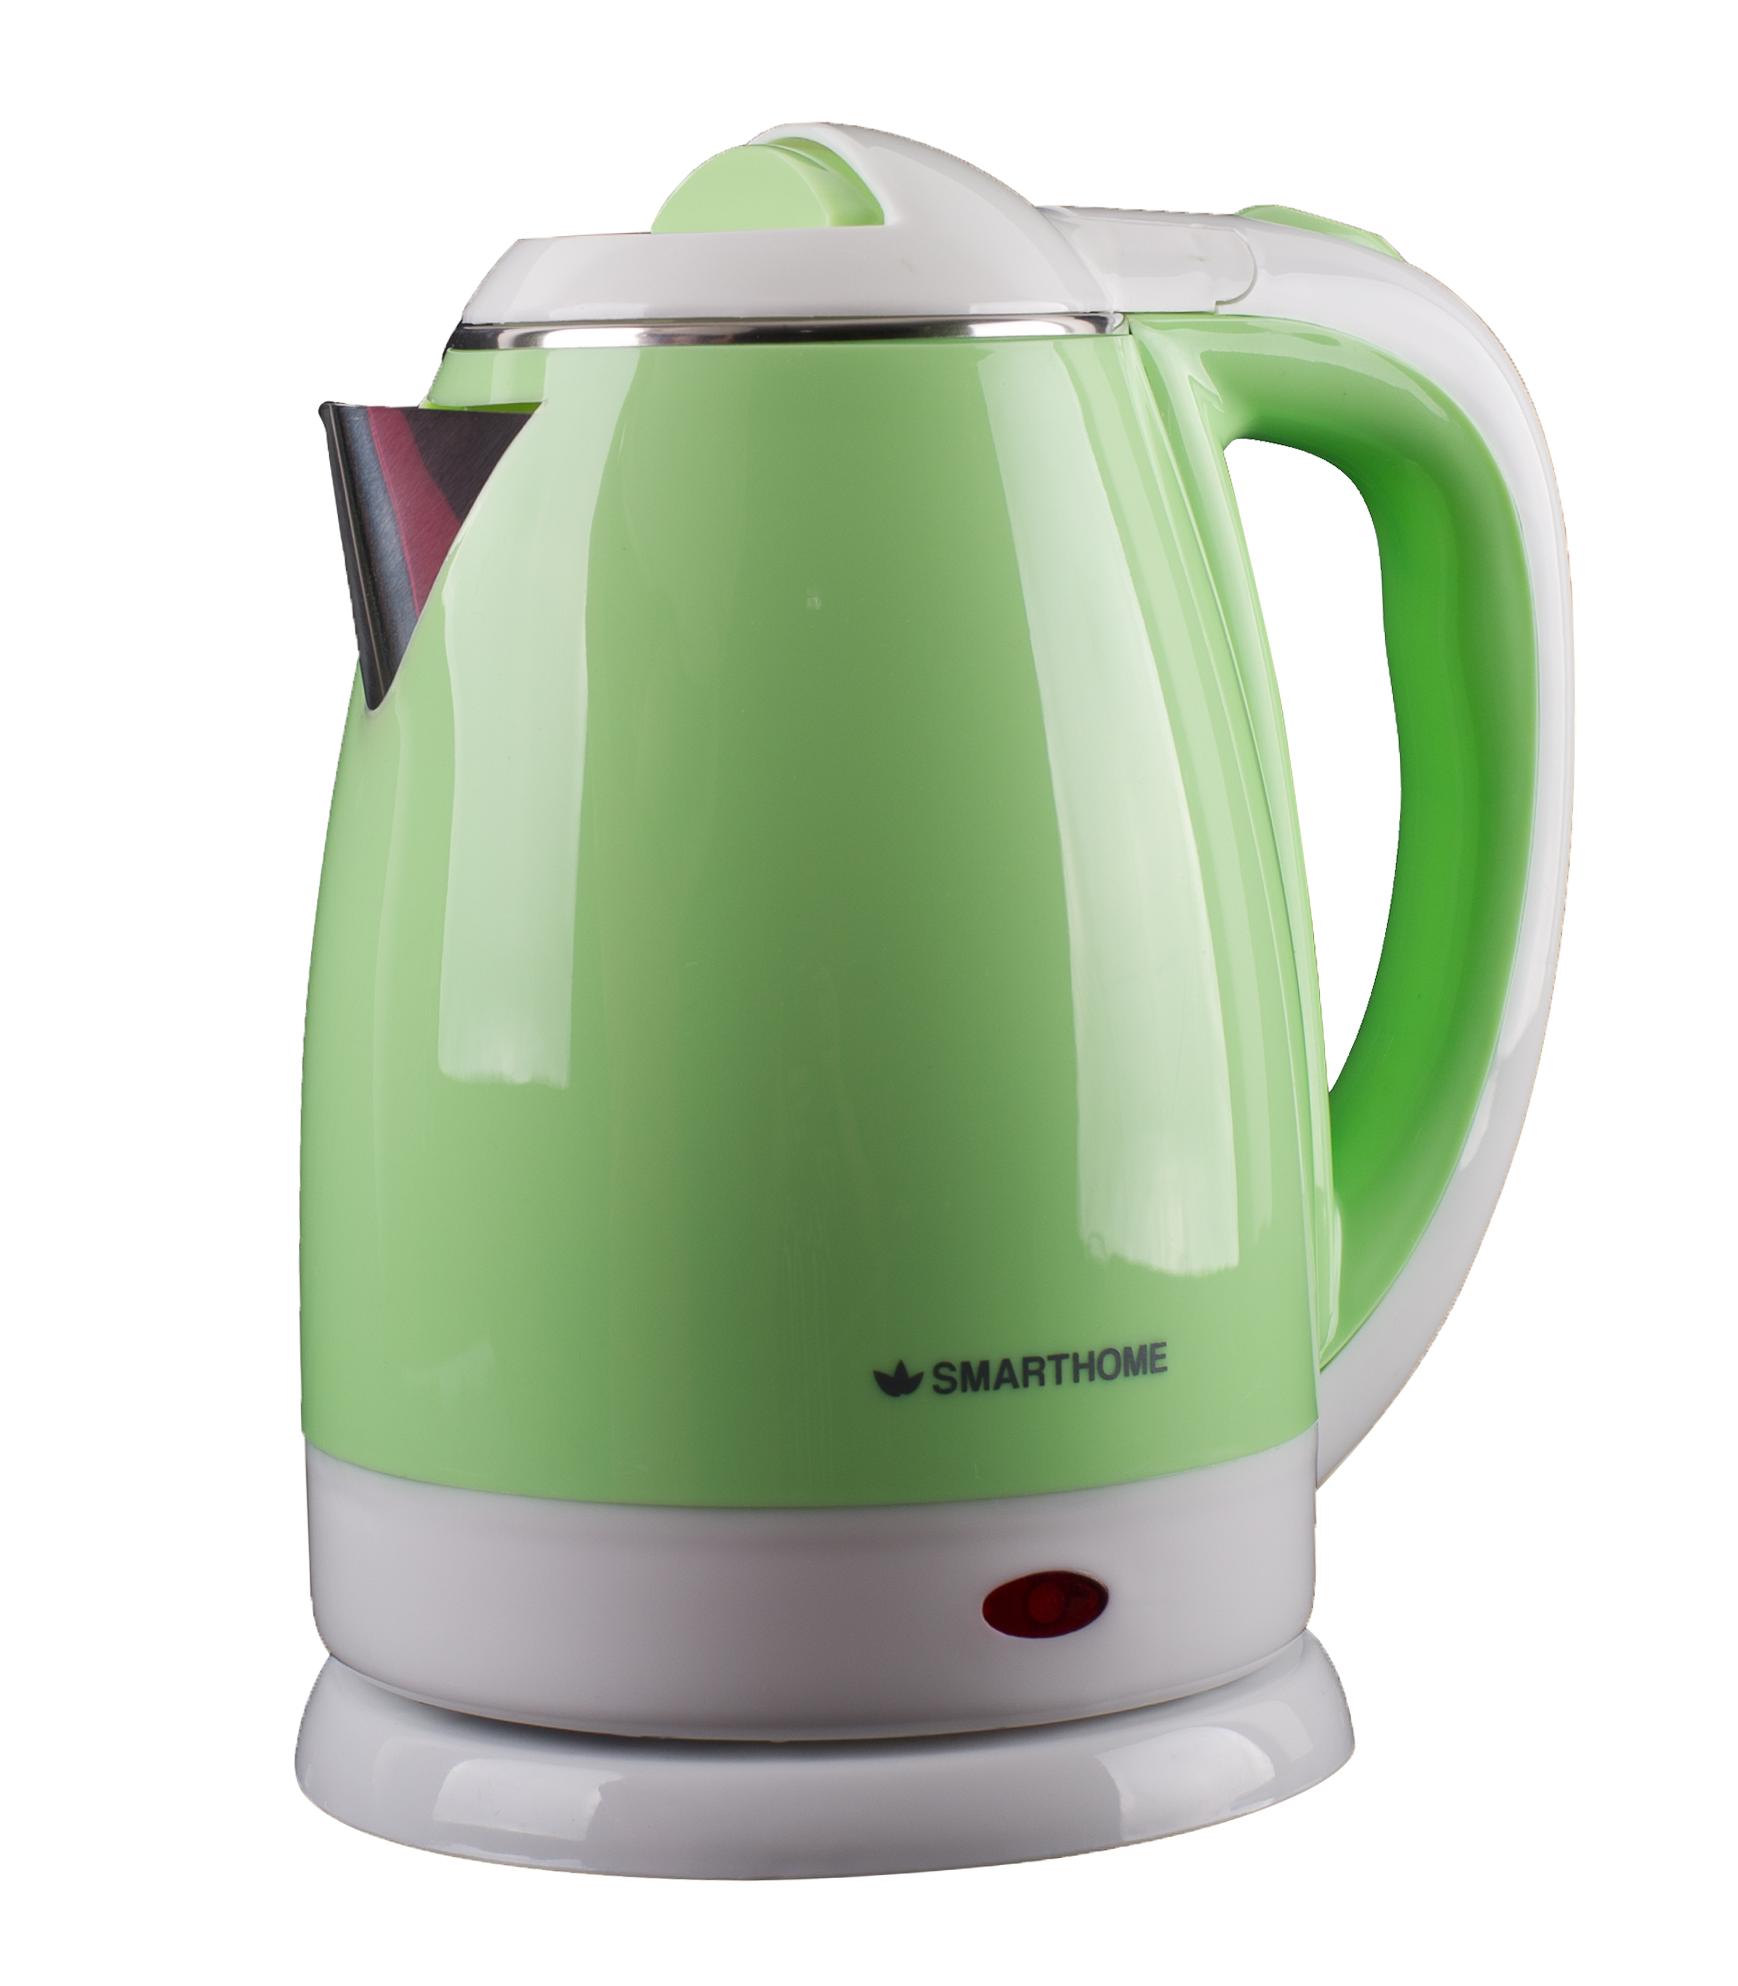 SMART HOME Electric kettle กาต้มน้ำขนาด เคลือบผิวด้านนอก ป้องกันความร้อน 1.8 ลิตร - รุ่น CA-1001 Green 1.8 L